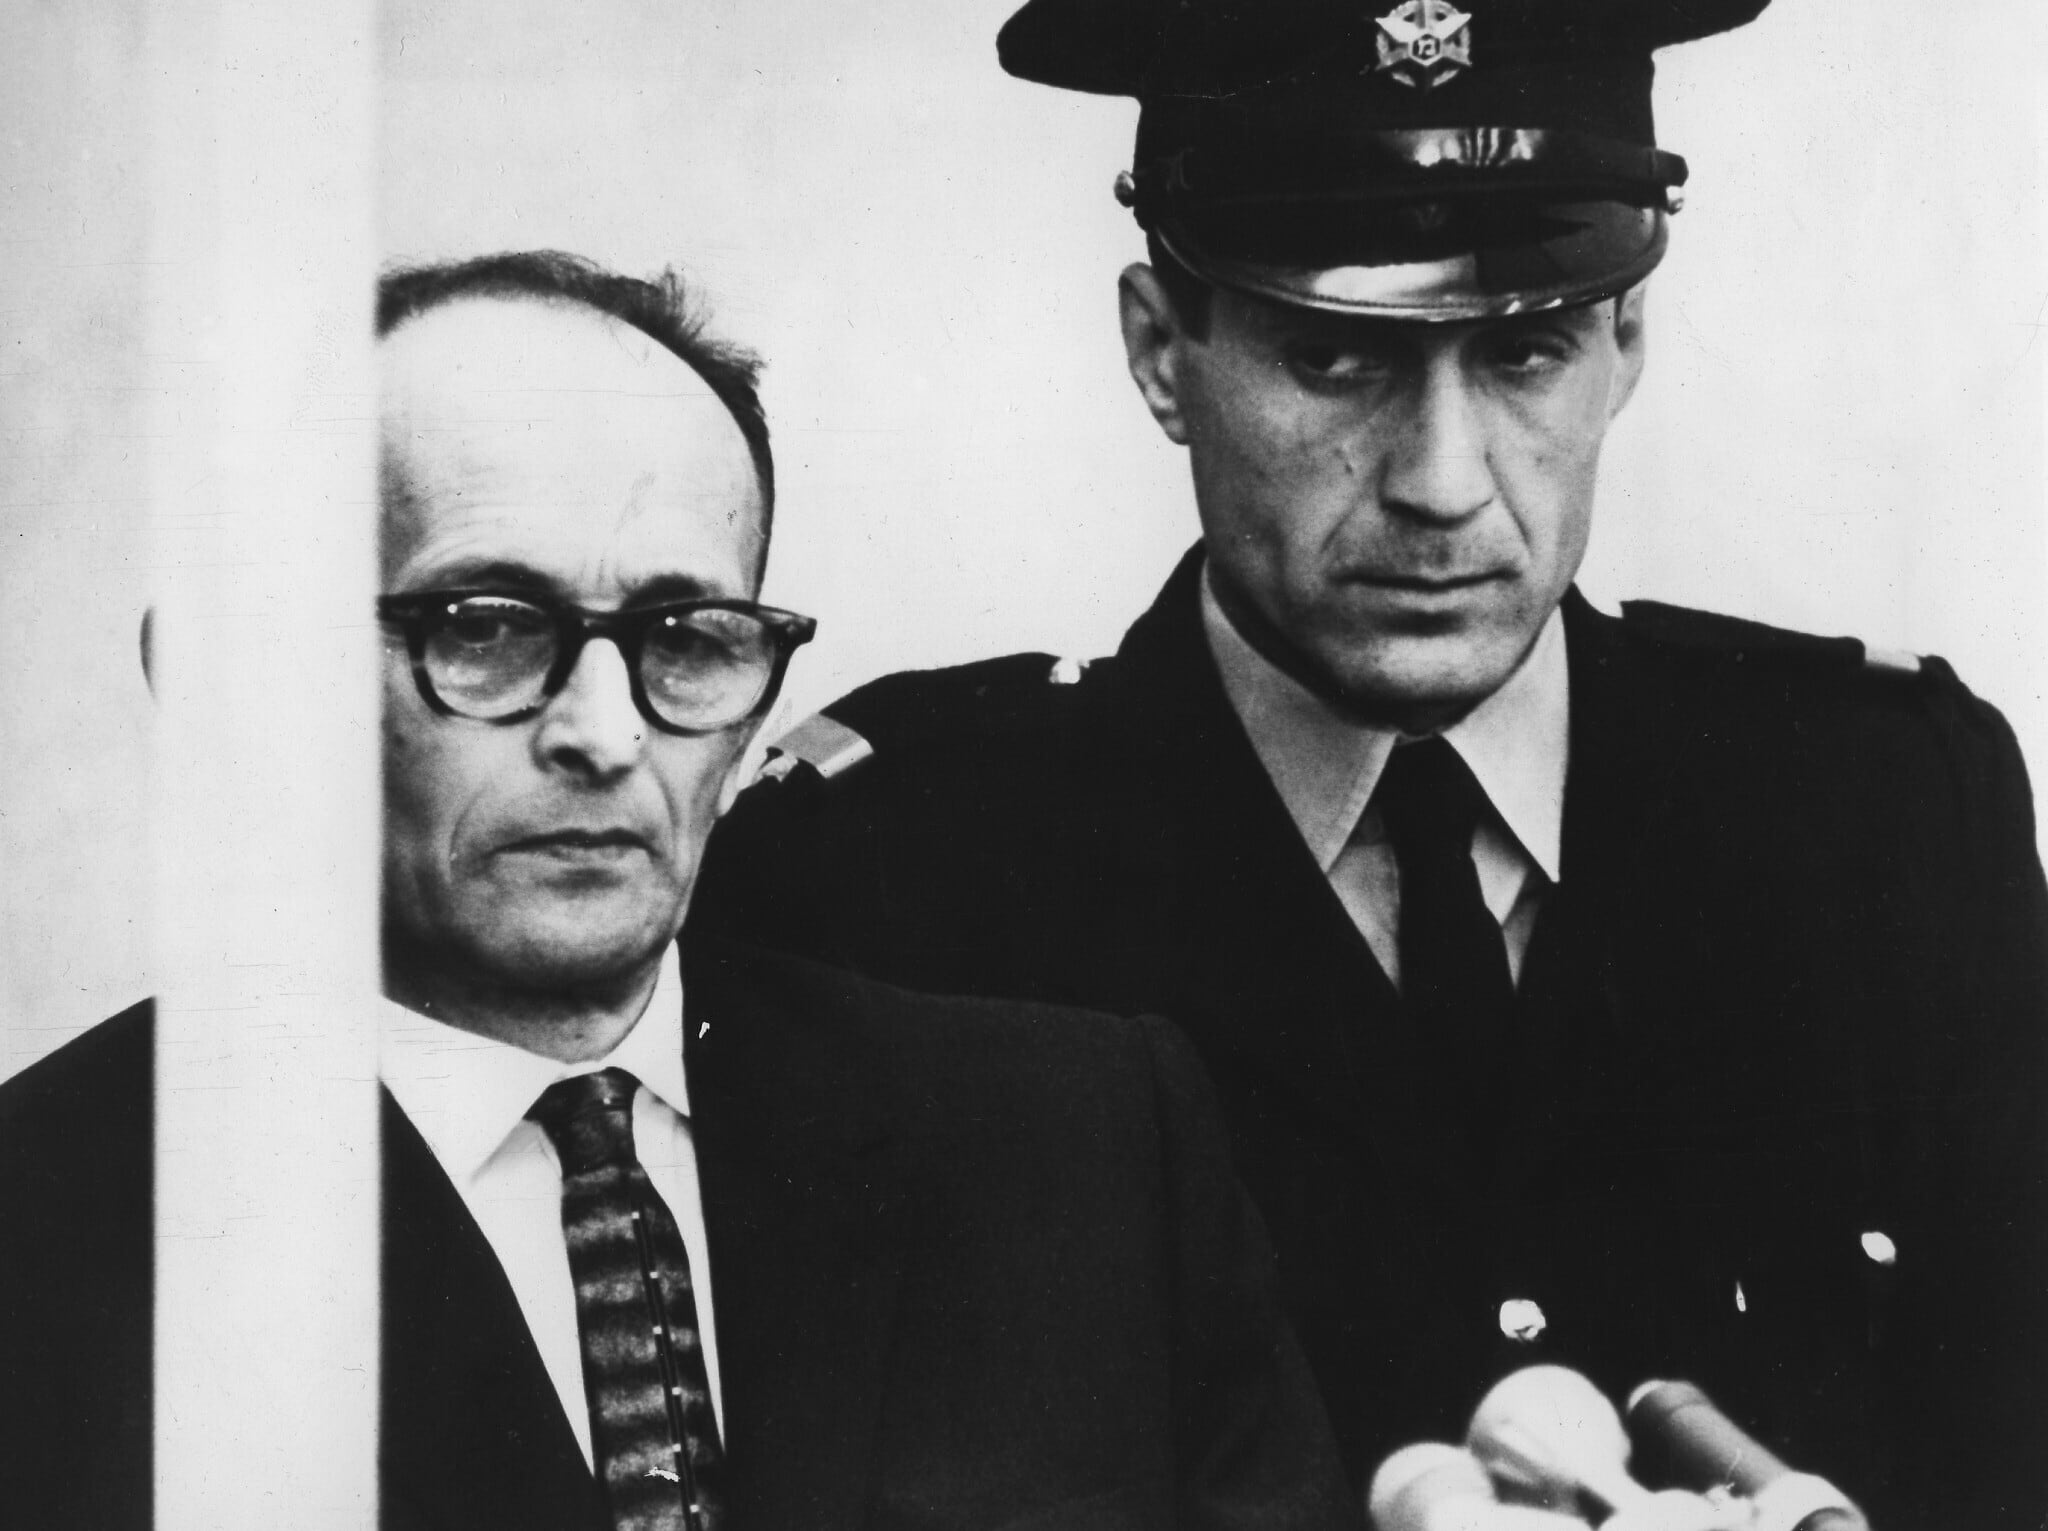 אדולף אייכמן בתא הזכוכית שלו בעת הקראת האישומים נגדו במהלך משפטו בבניין בית העם בירושלים, 12 באפריל 1961 (צילום: AP Photo/Str)